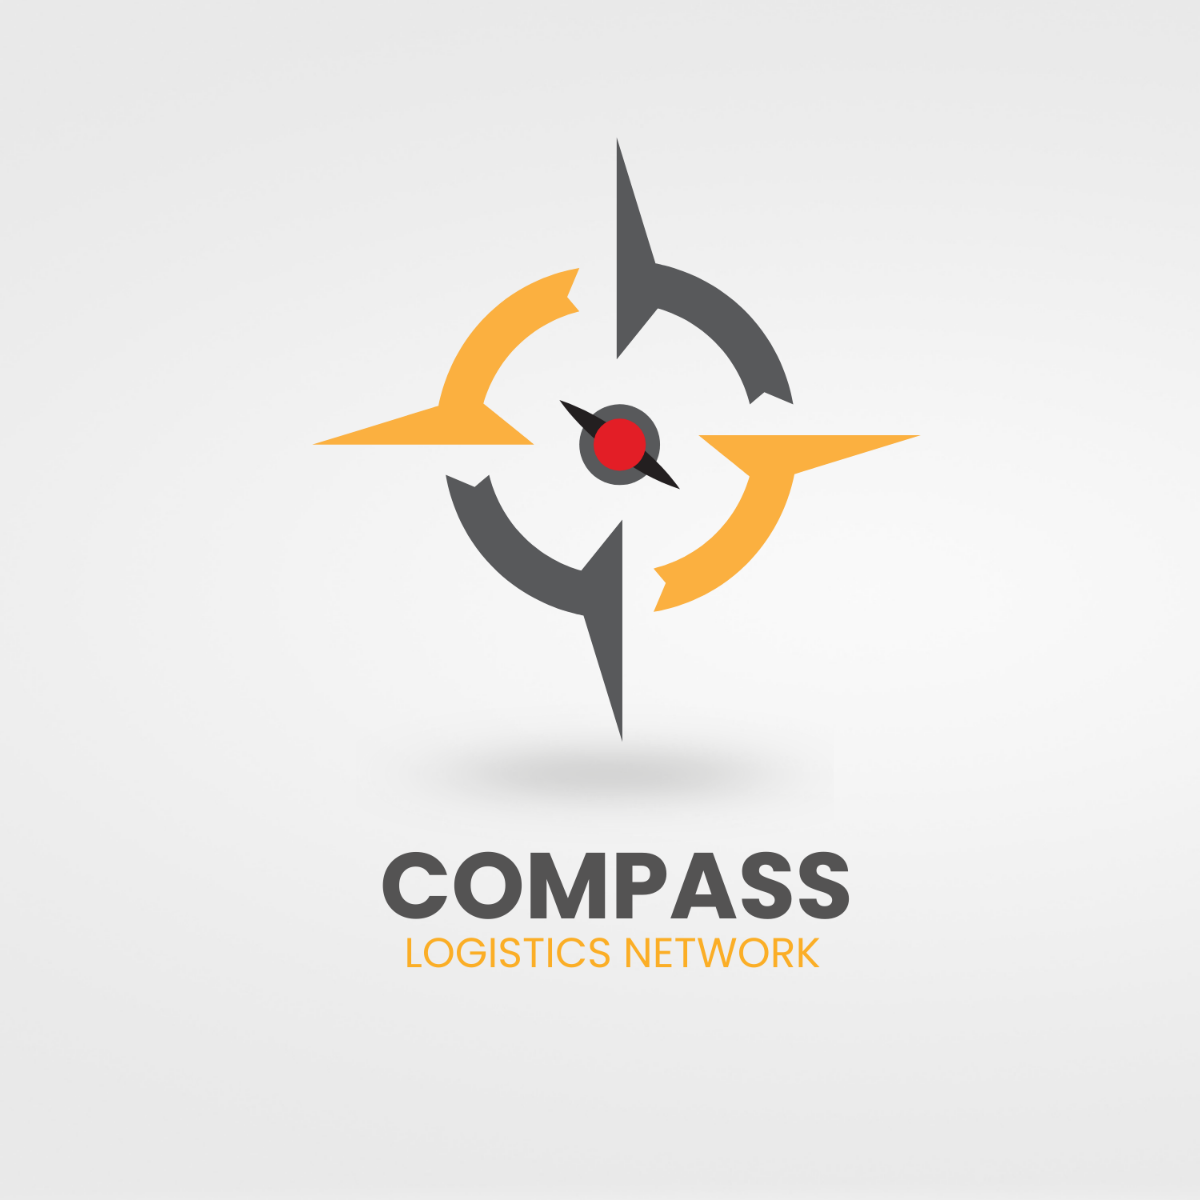 Logistics Network Compass Logo Template